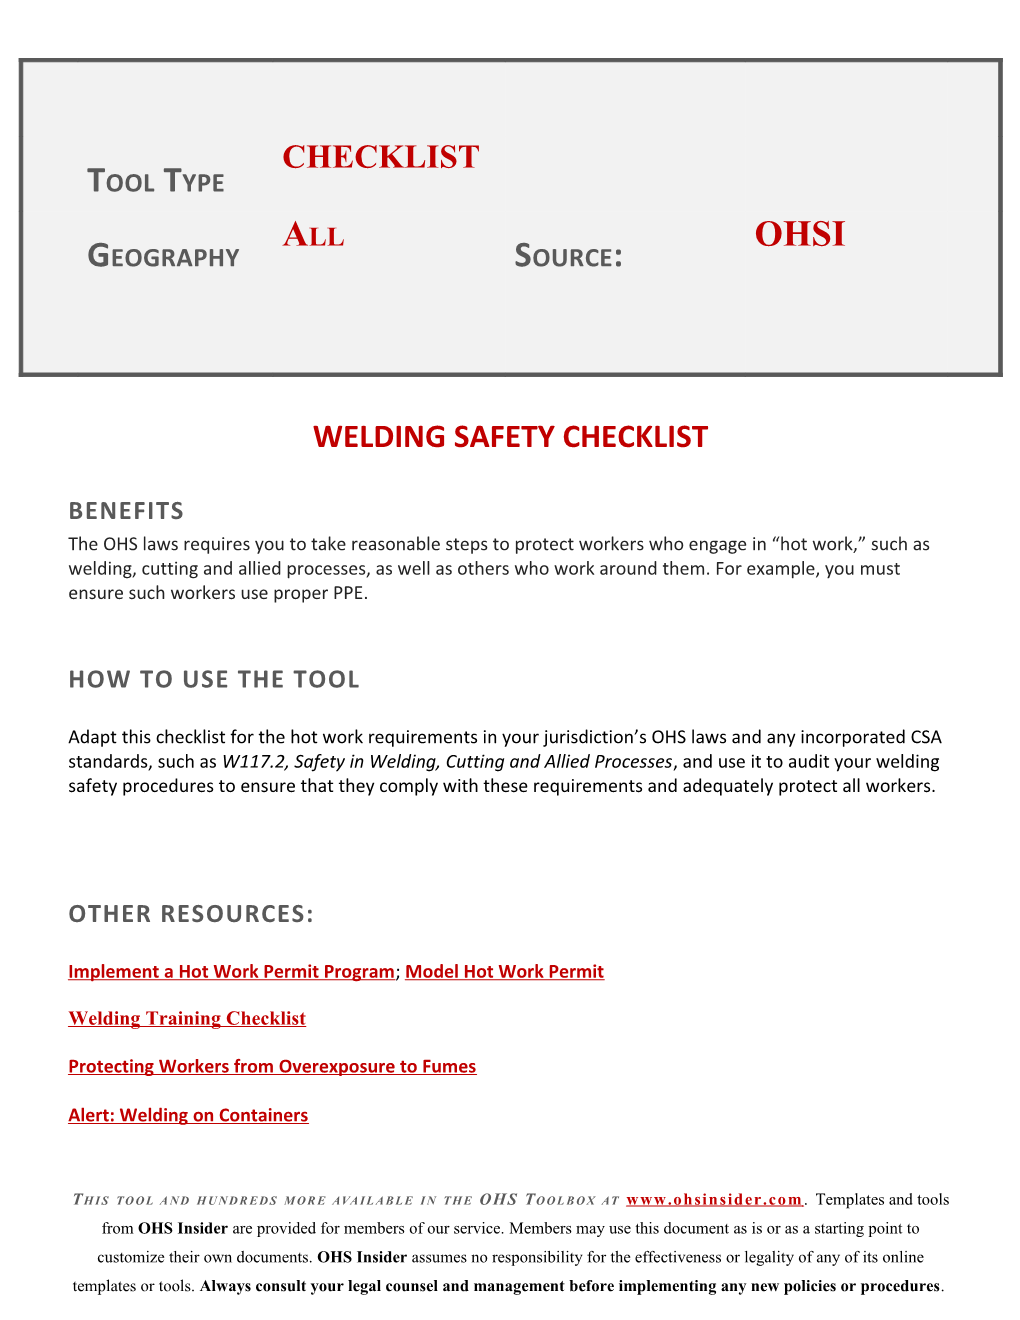 Welding Safety Checklist